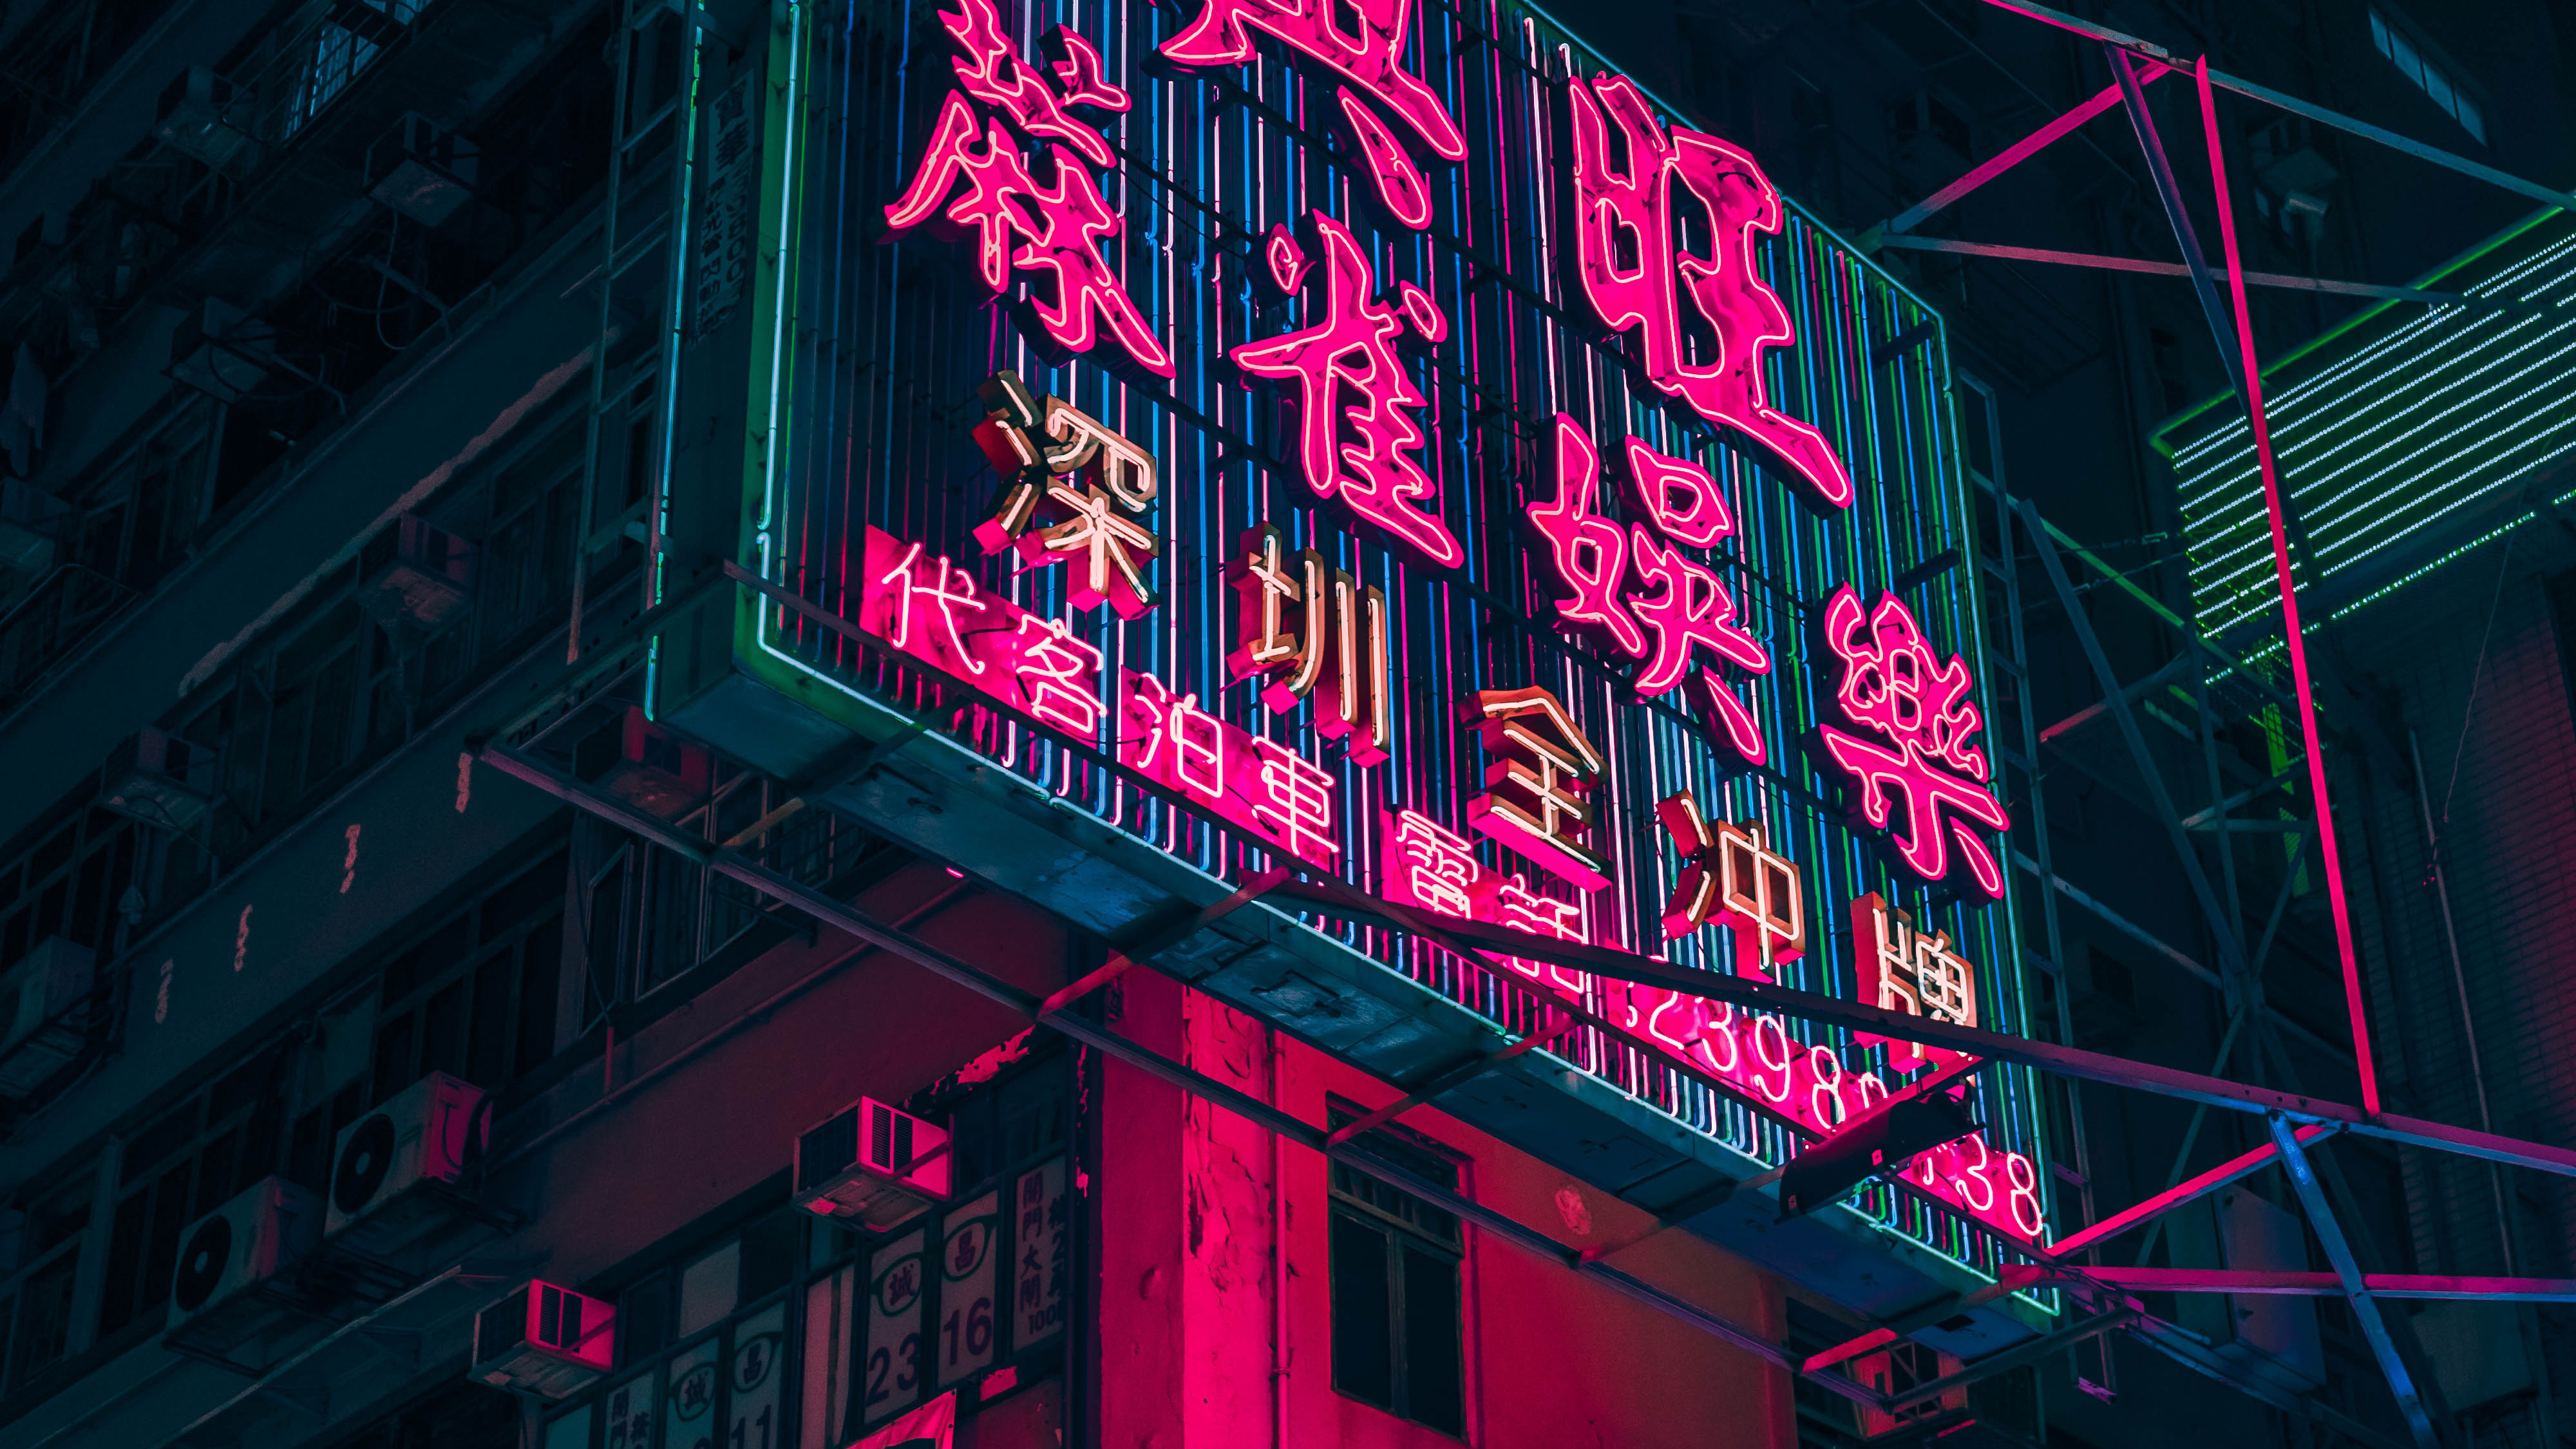 Hong Kong City Neon City, HD World, 4k Wallpapers, Images ...